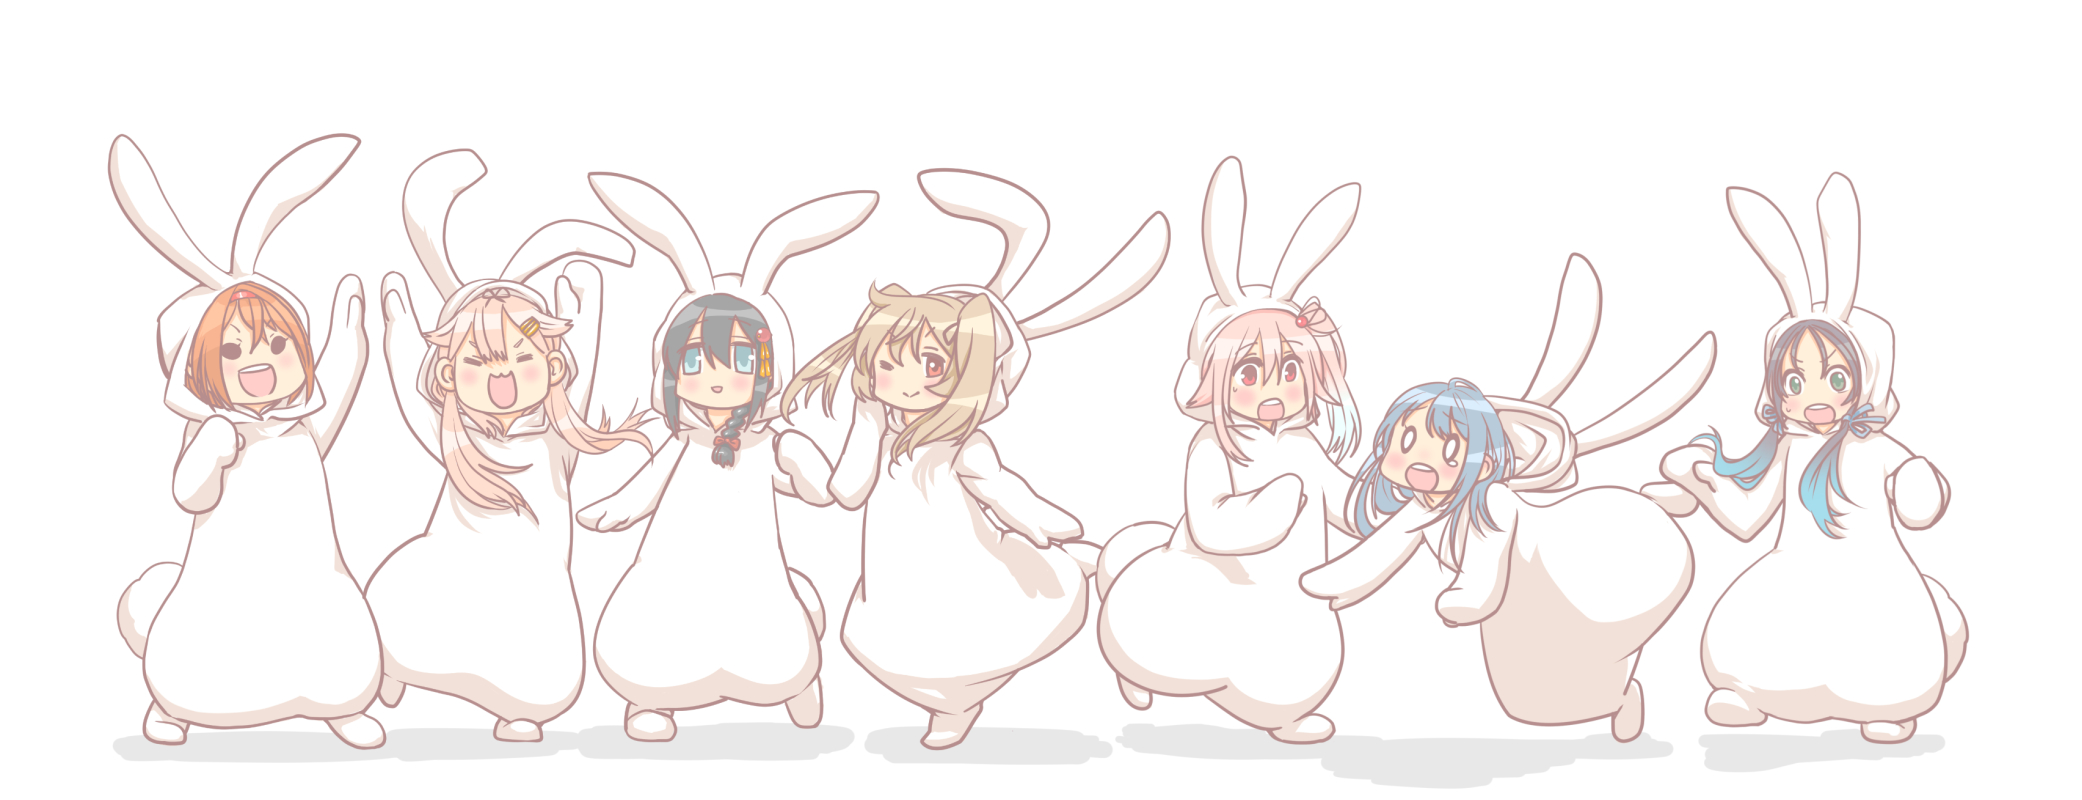 白露型兔女郎2插画图片壁纸